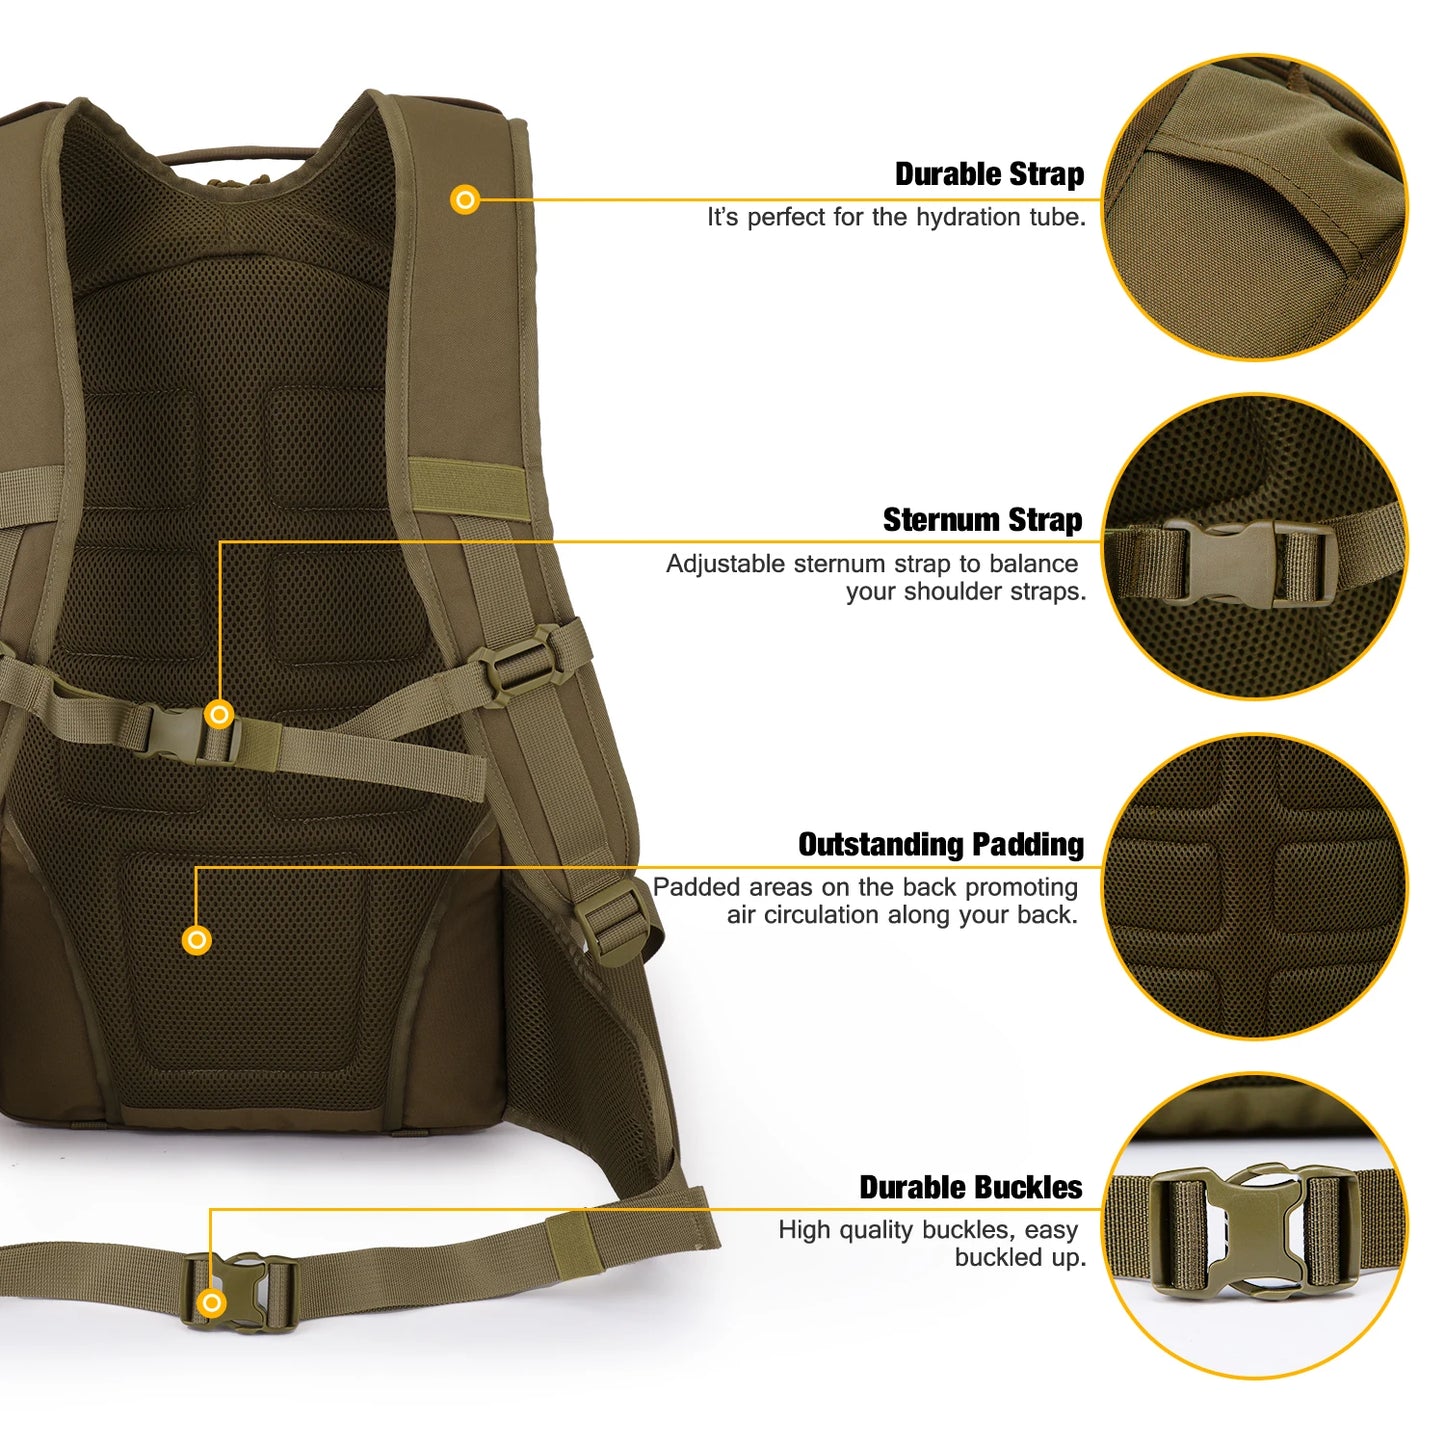 Mardingtop taktisk rygsæk med regnafdækning 35L Daypack for Men Trekking Fishing Sports Camping Vandring 600D Polyester